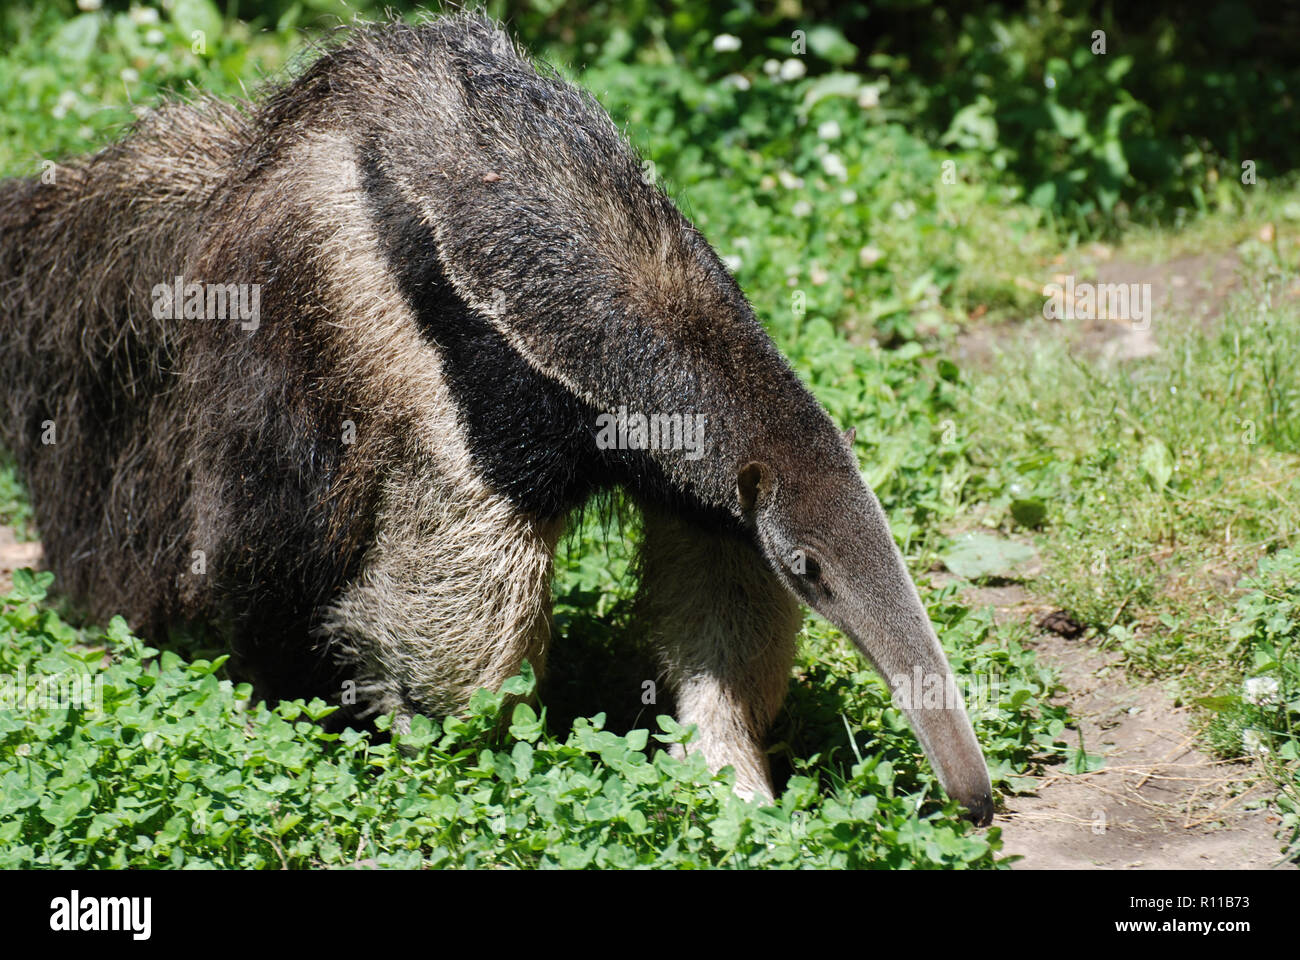 Anteater on the hunt for ants for dinner. Stock Photo